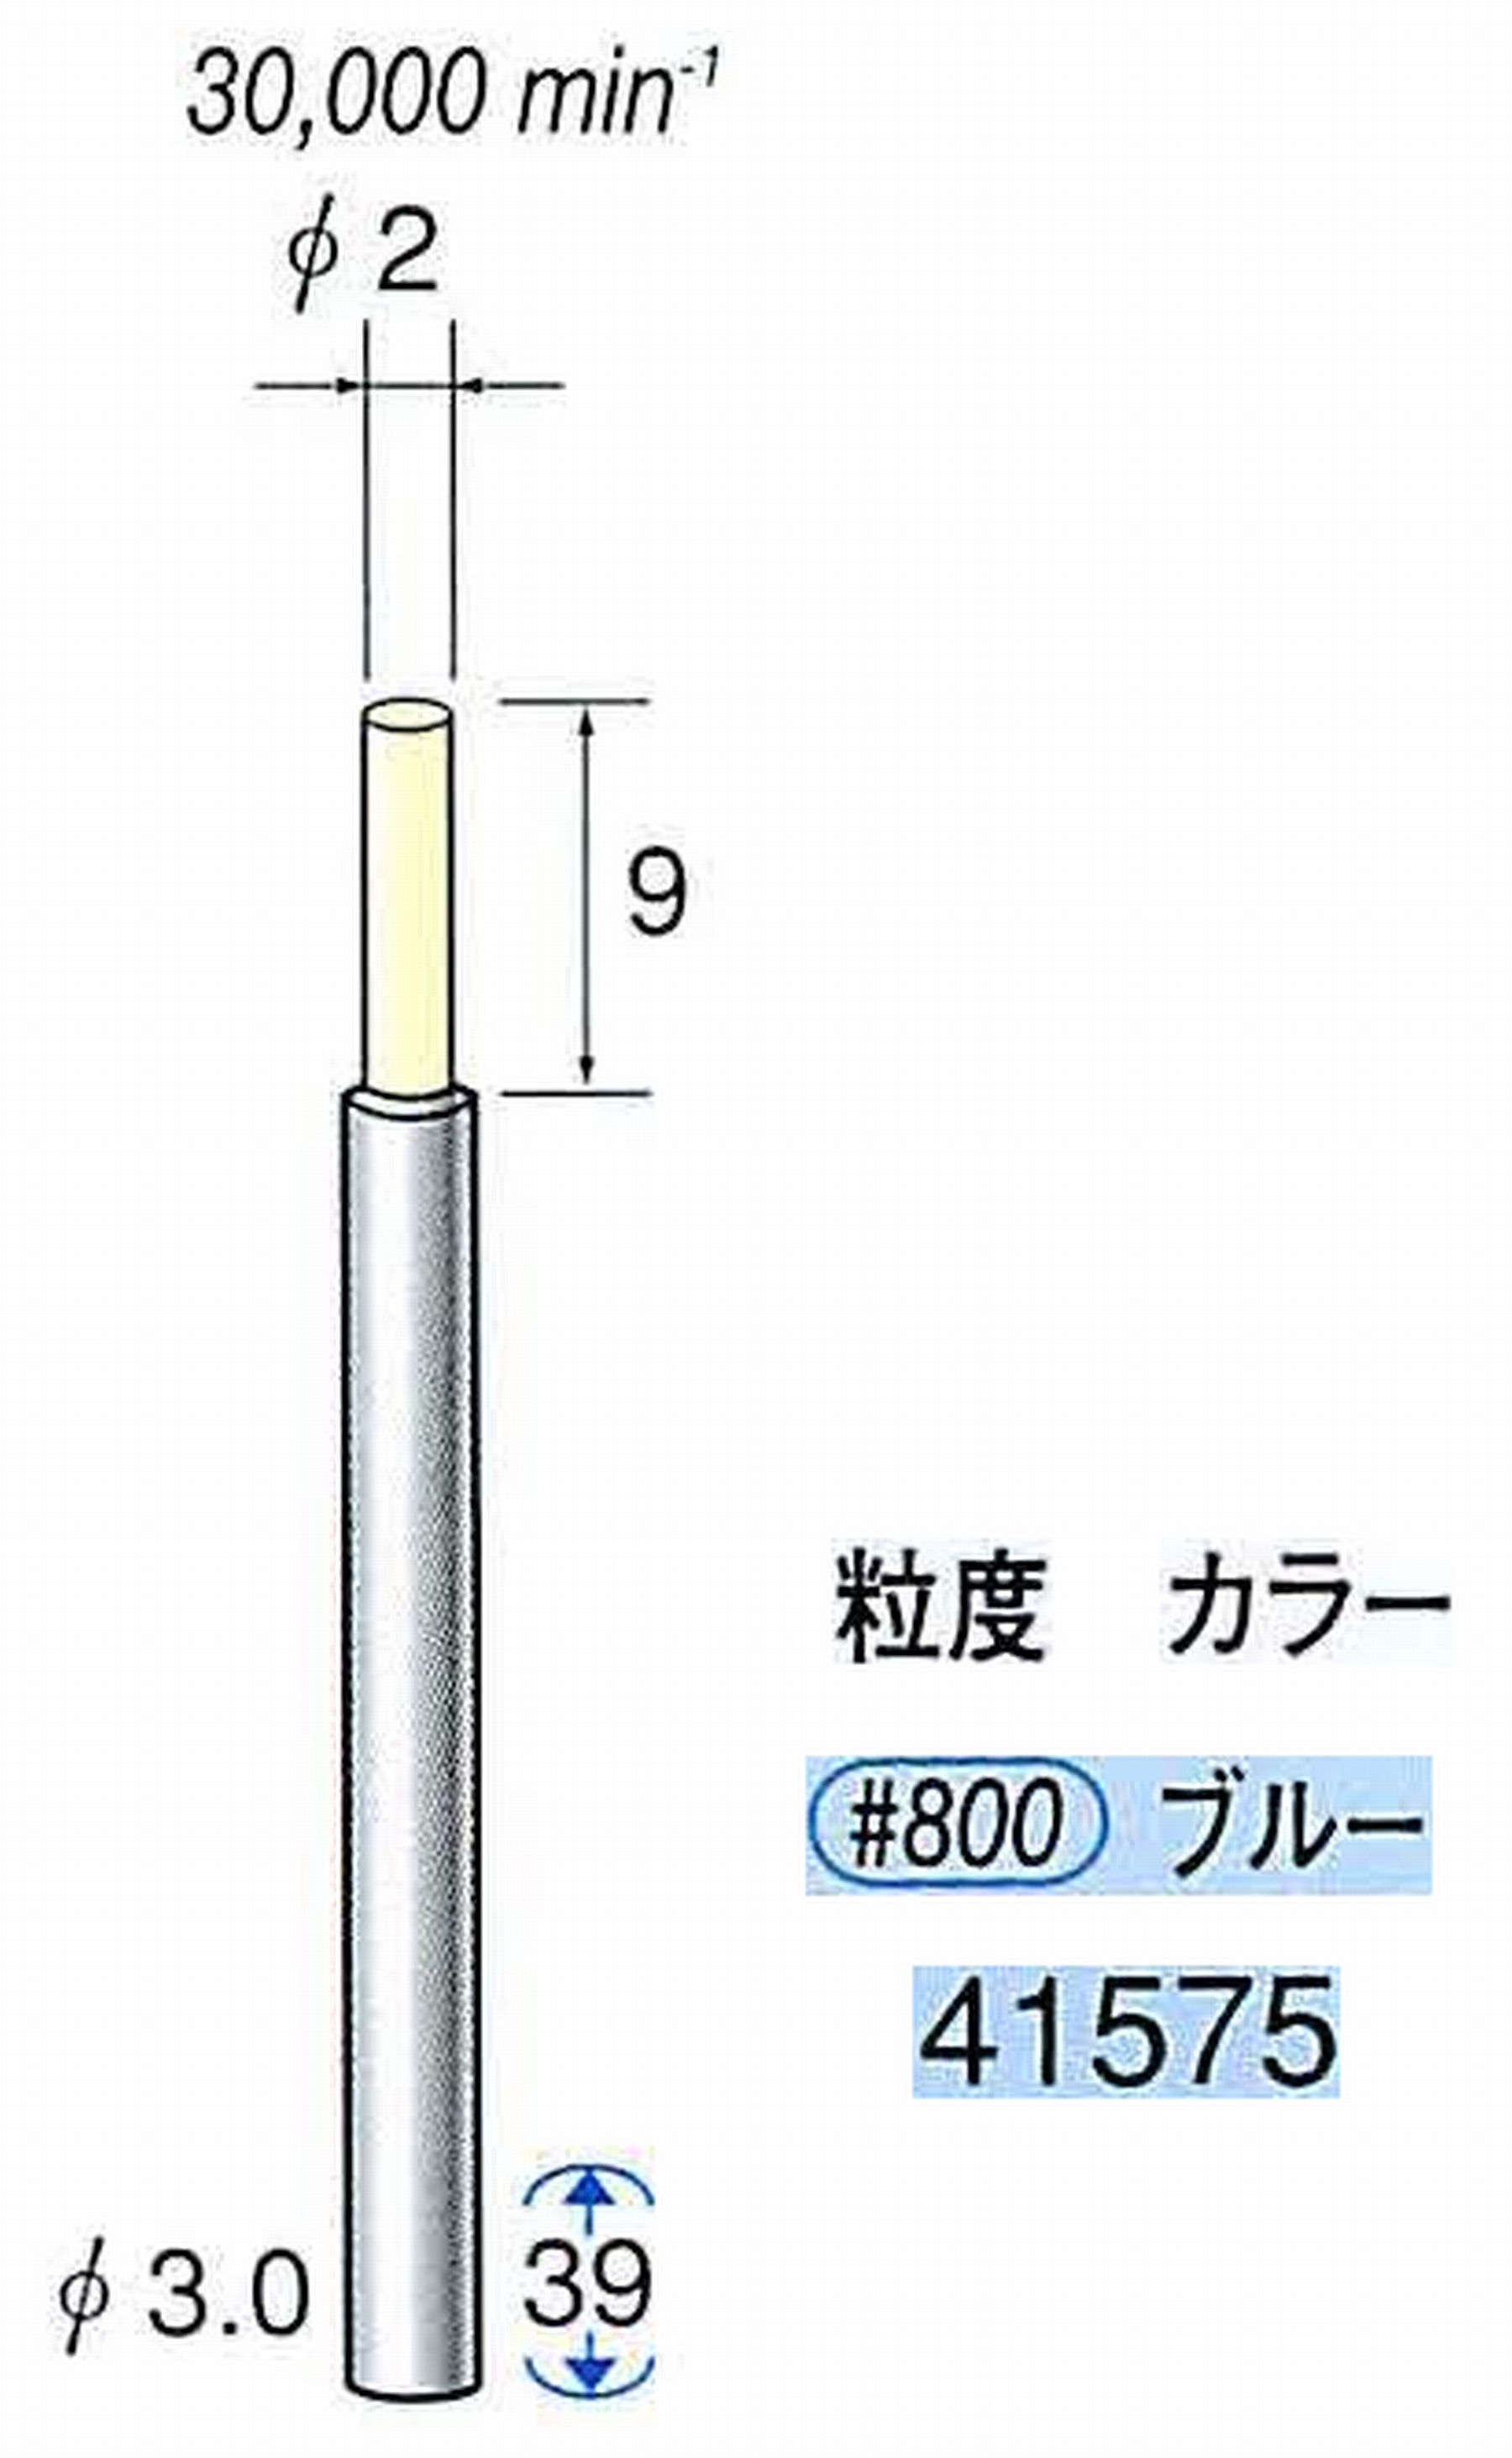 ナカニシ/NAKANISHI セラファイバー精密軸付砥石(カラー ブルー) 軸径(シャンク) φ3.0mm 41575